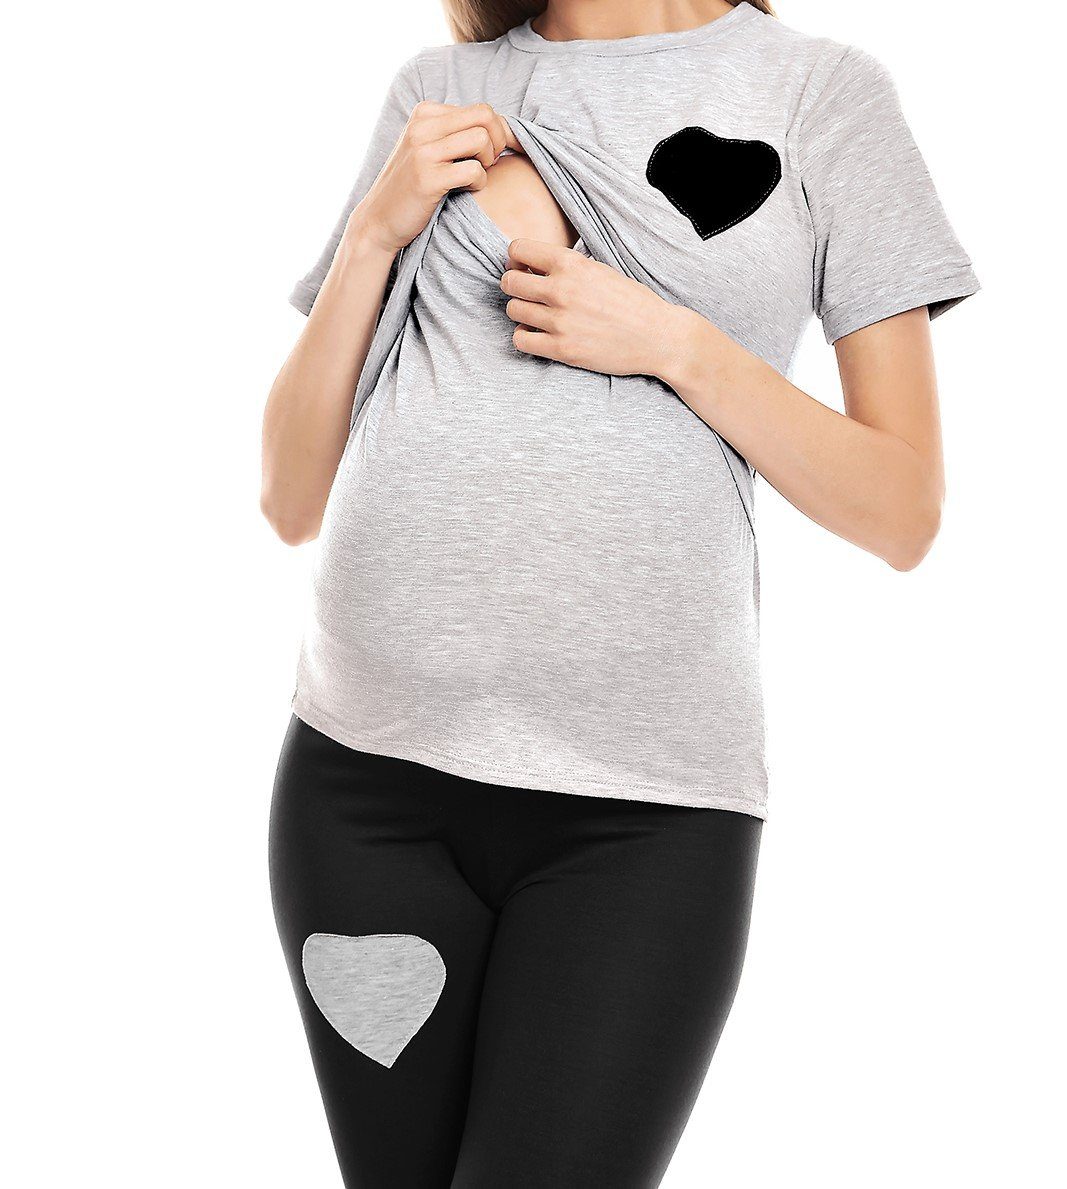 Stillschlafanzug Umstandspyjama PeeKaBoo Schwangerschaft Schlafanzug grau/schwarz Stillen